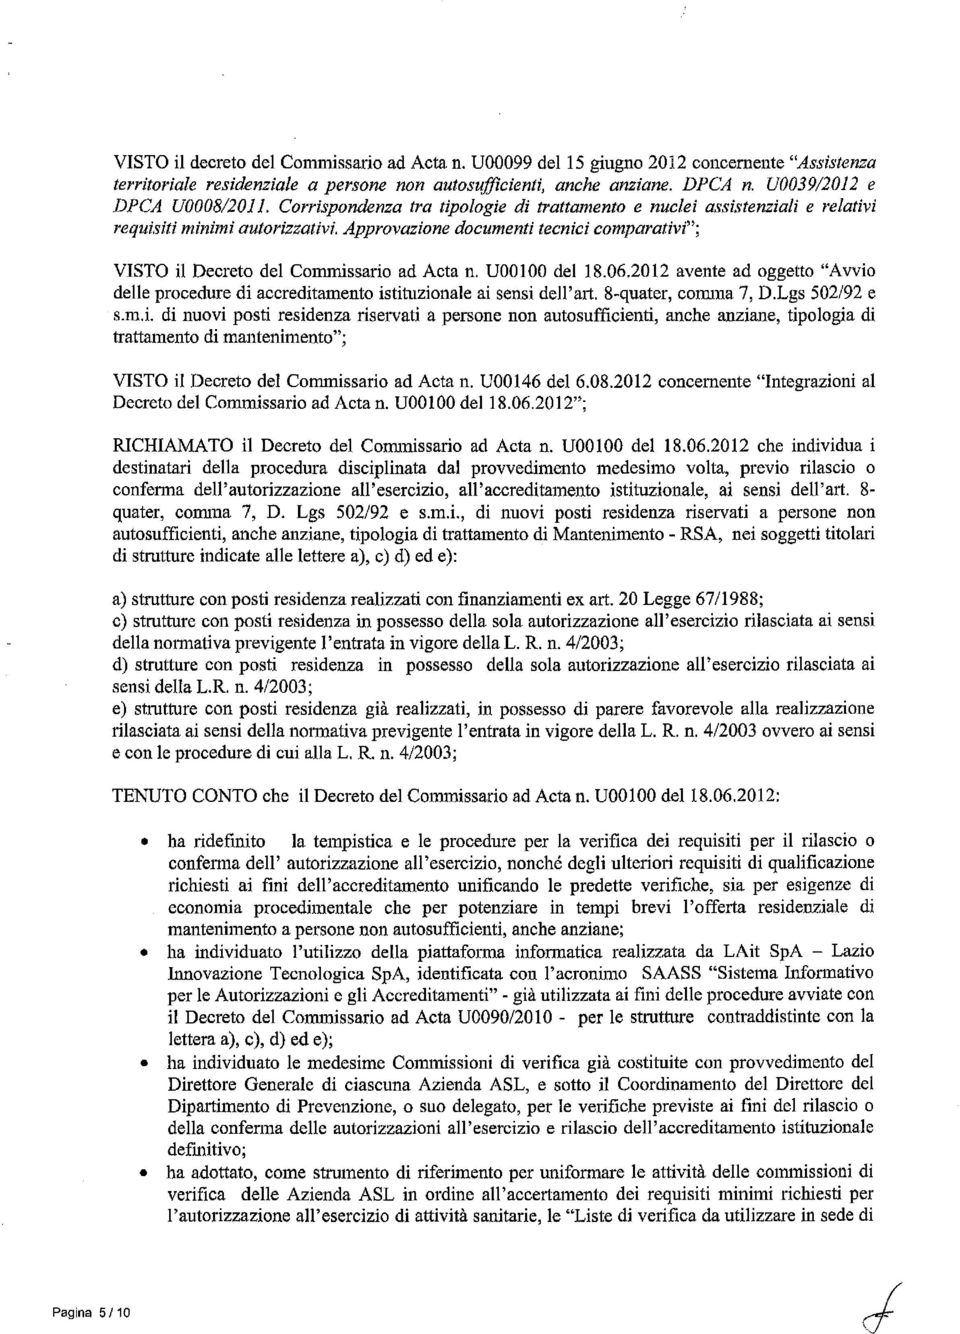 Approvazionedocumenti tecnici comparativi"; VISTO il Decreto del Commissario ad Acta n. UOOI00 del 18.06.